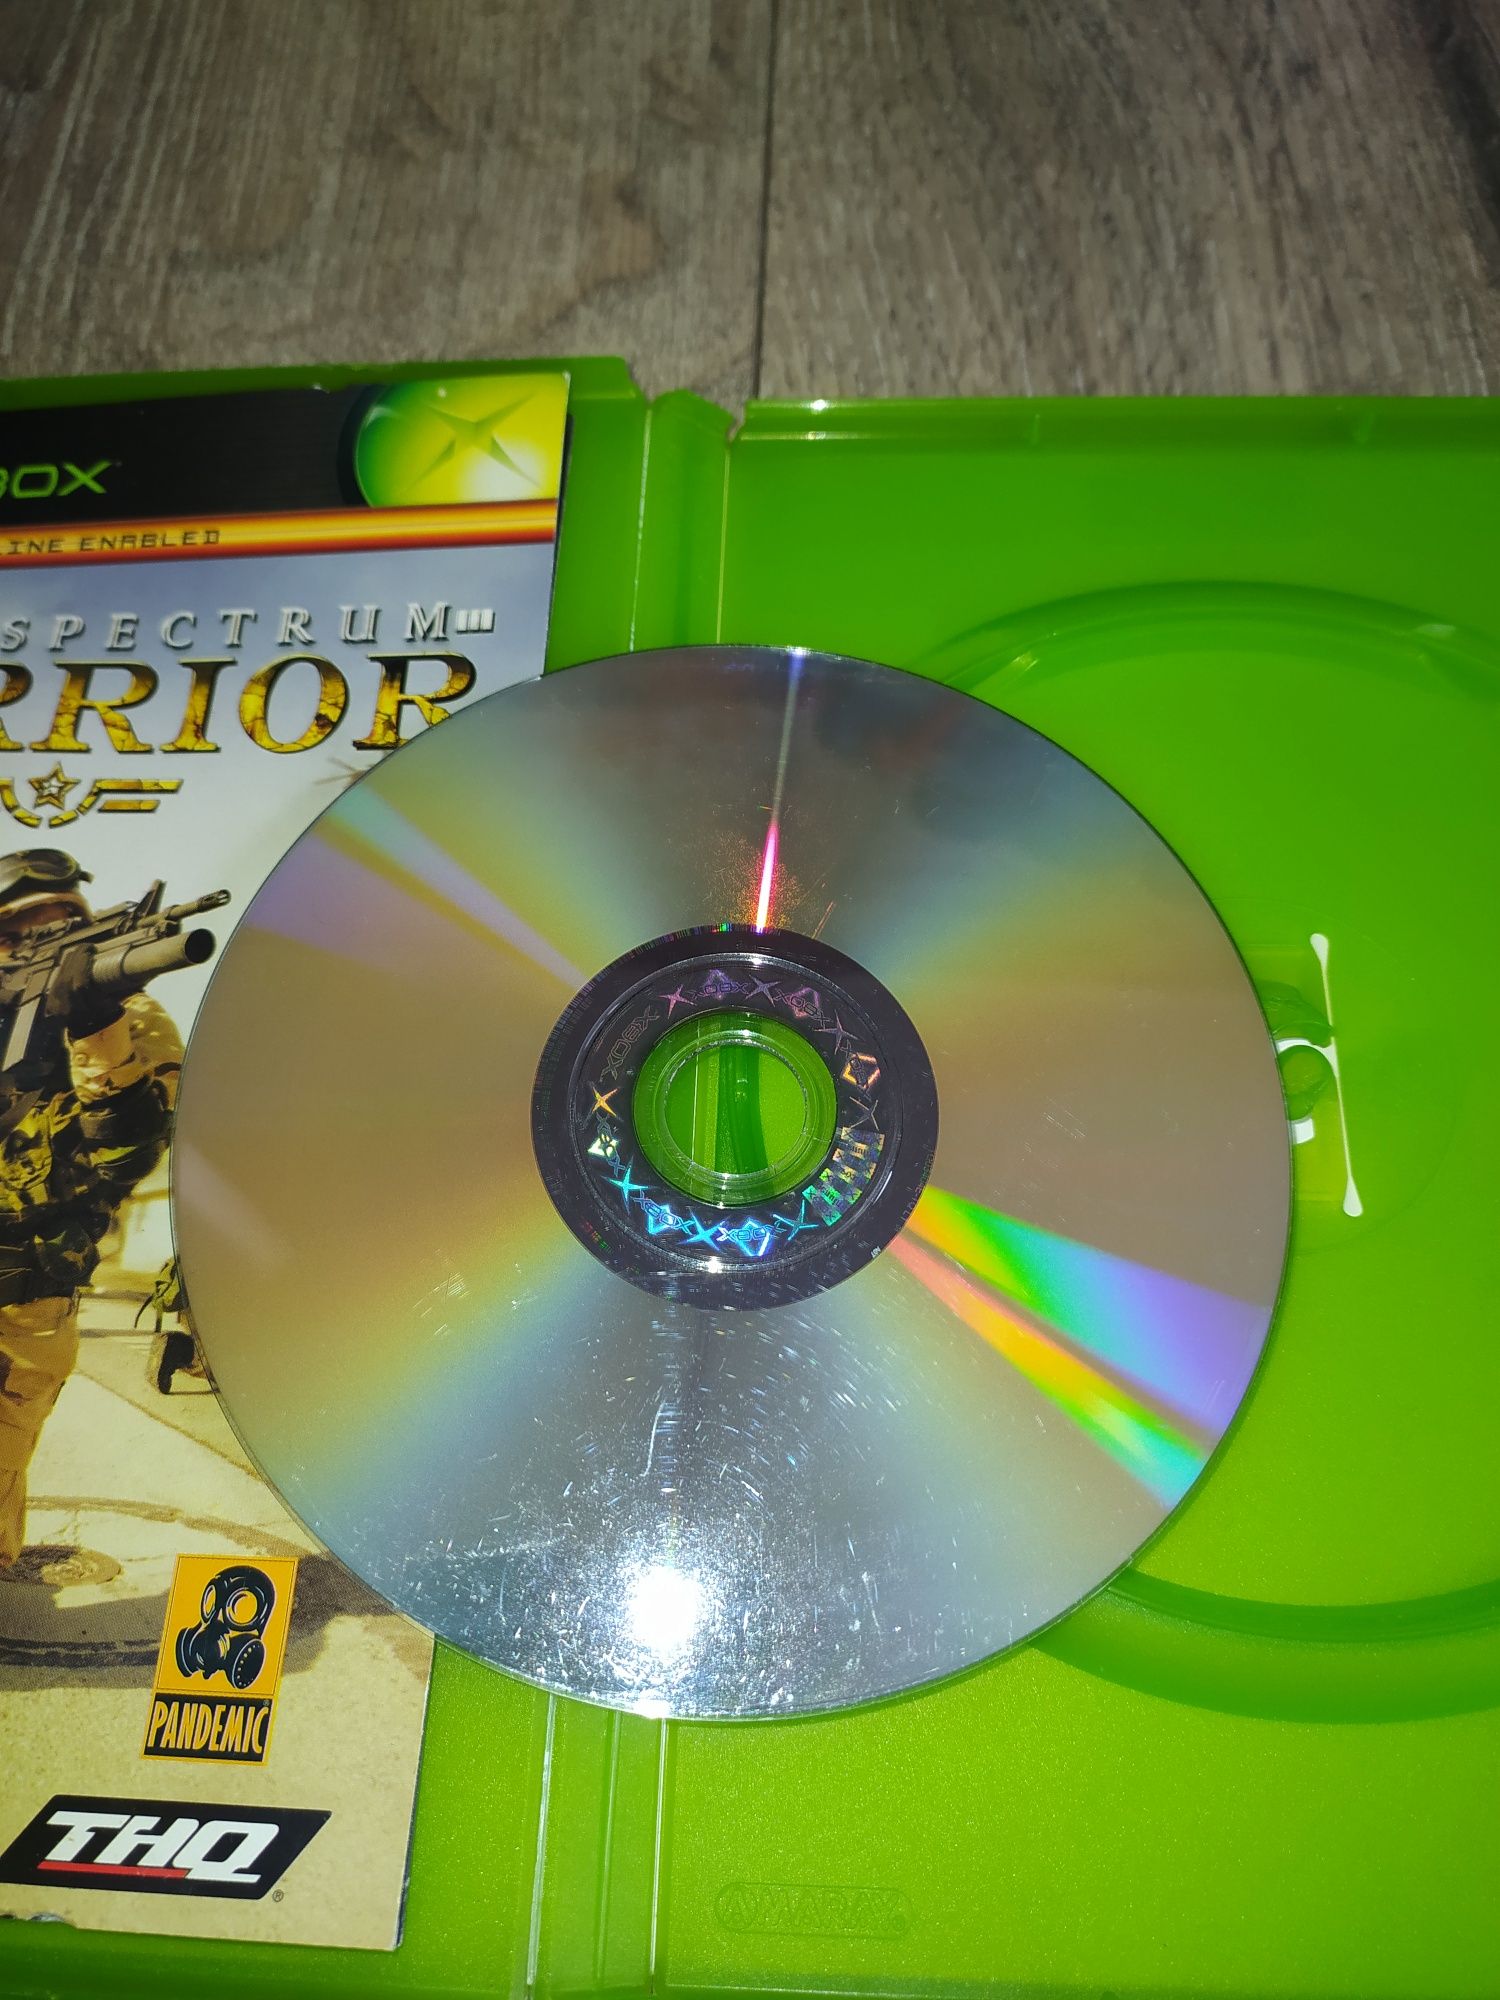 Gra Xbox Classic Full Spectrum Warrior Wysyłka w 24h